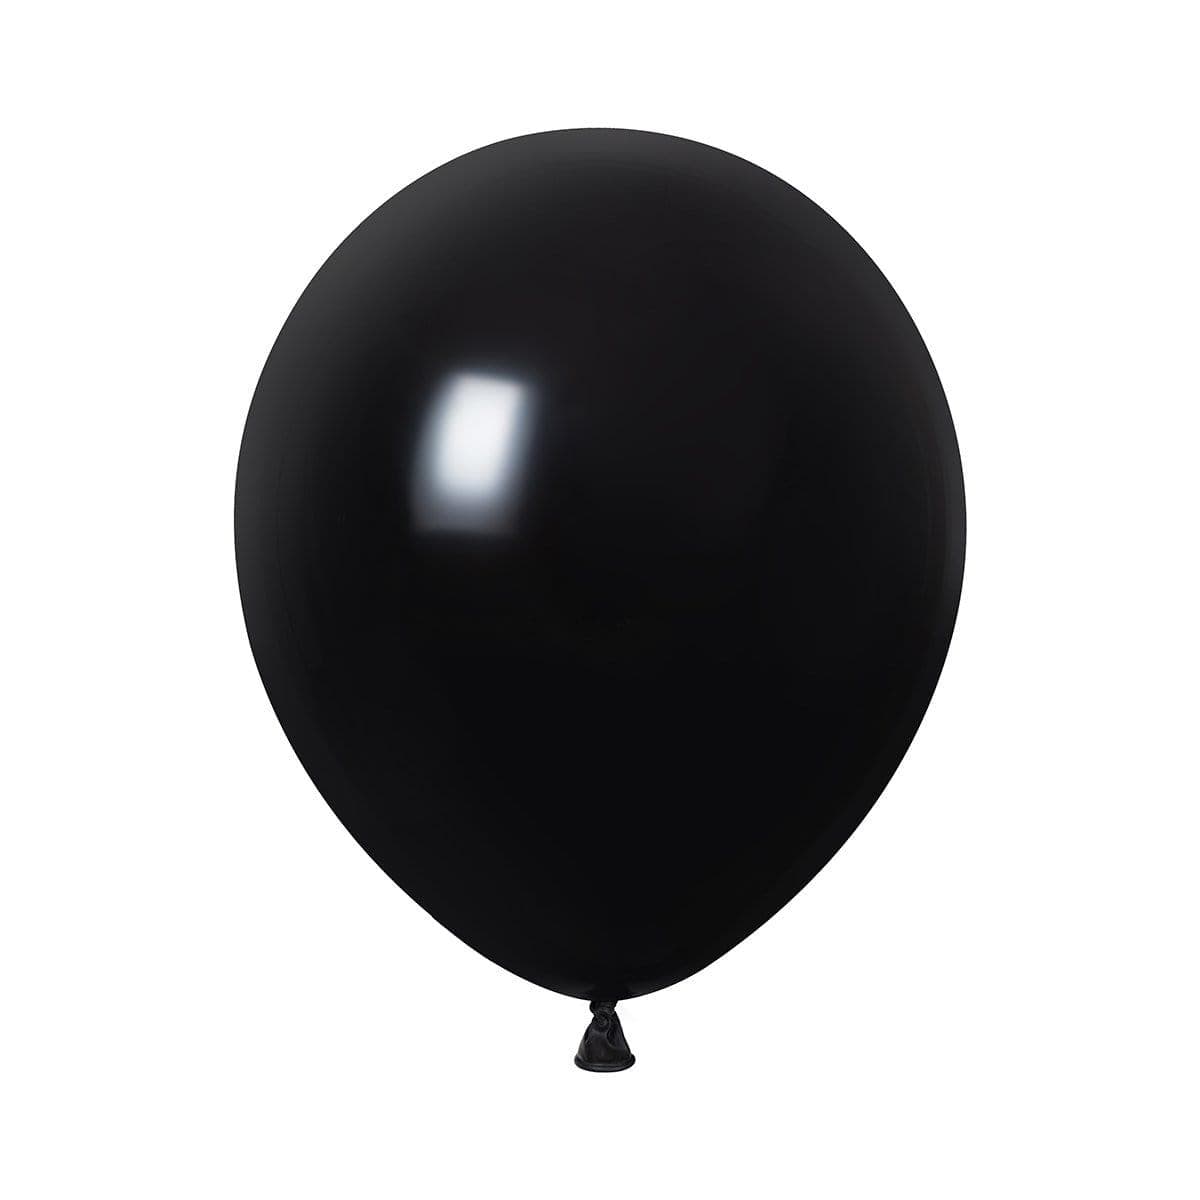 Ballon or latex